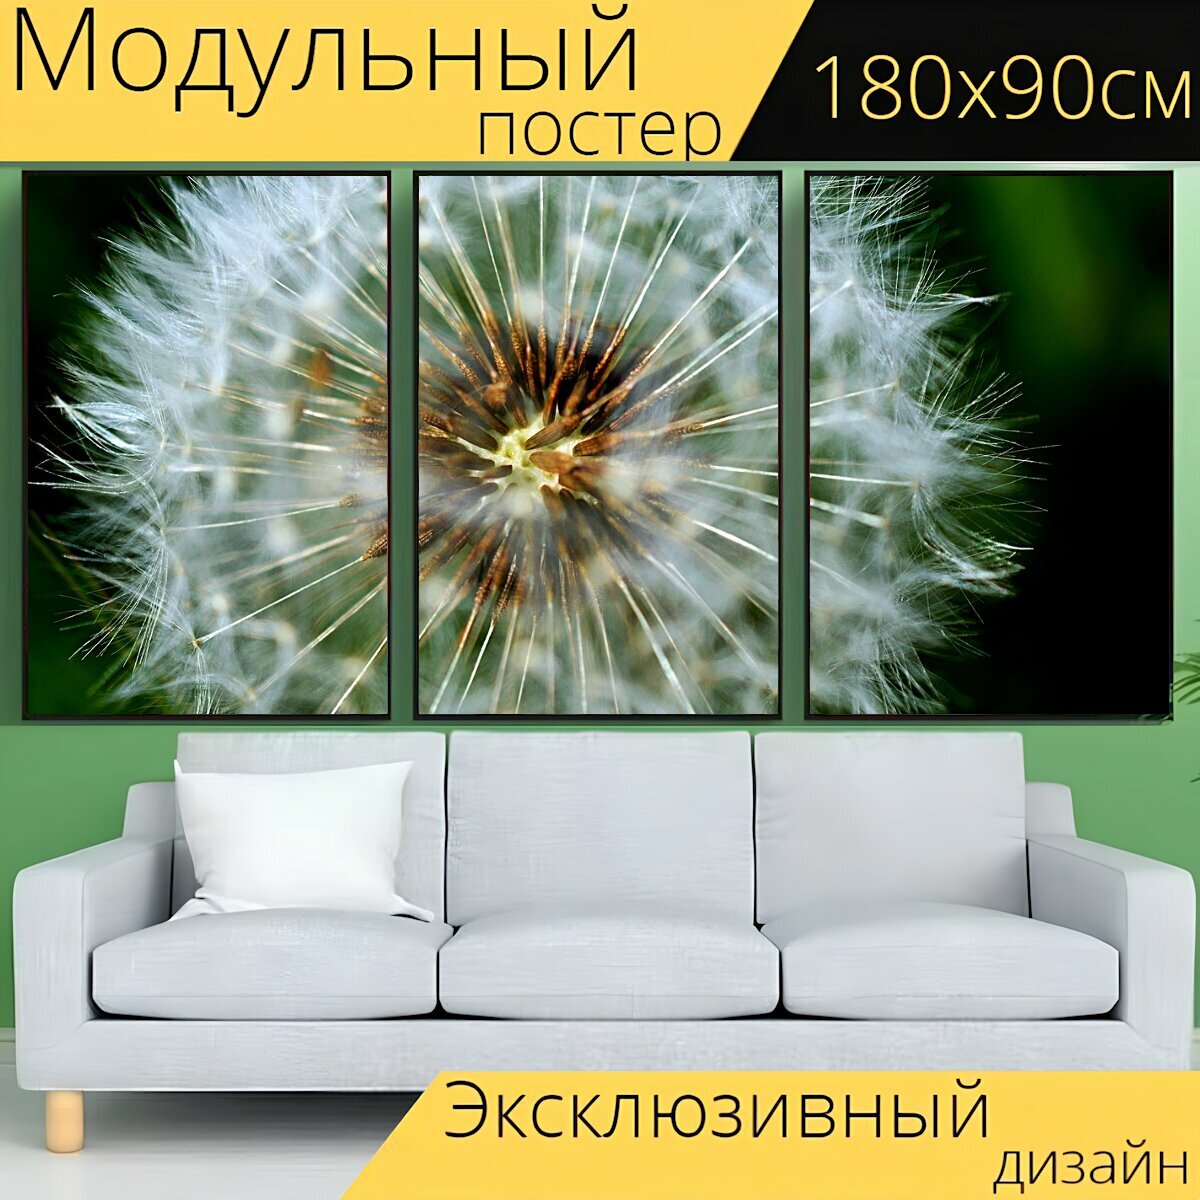 Модульный постер "Семена одуванчика, сорняк, одуванчик" 180 x 90 см. для интерьера